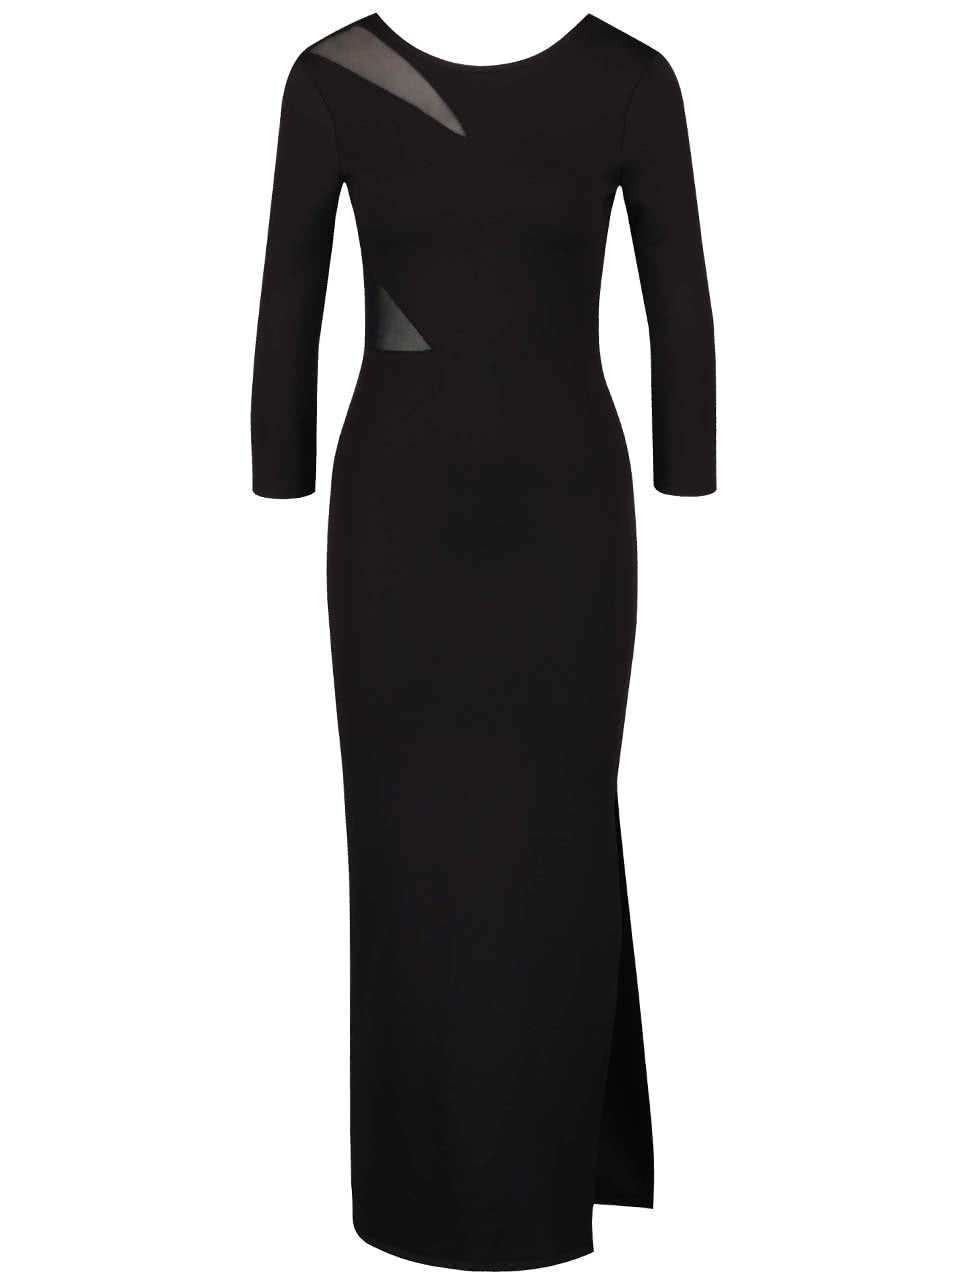 Černé dlouhé šaty s průsvitnými detaily Miss Selfridge Petites